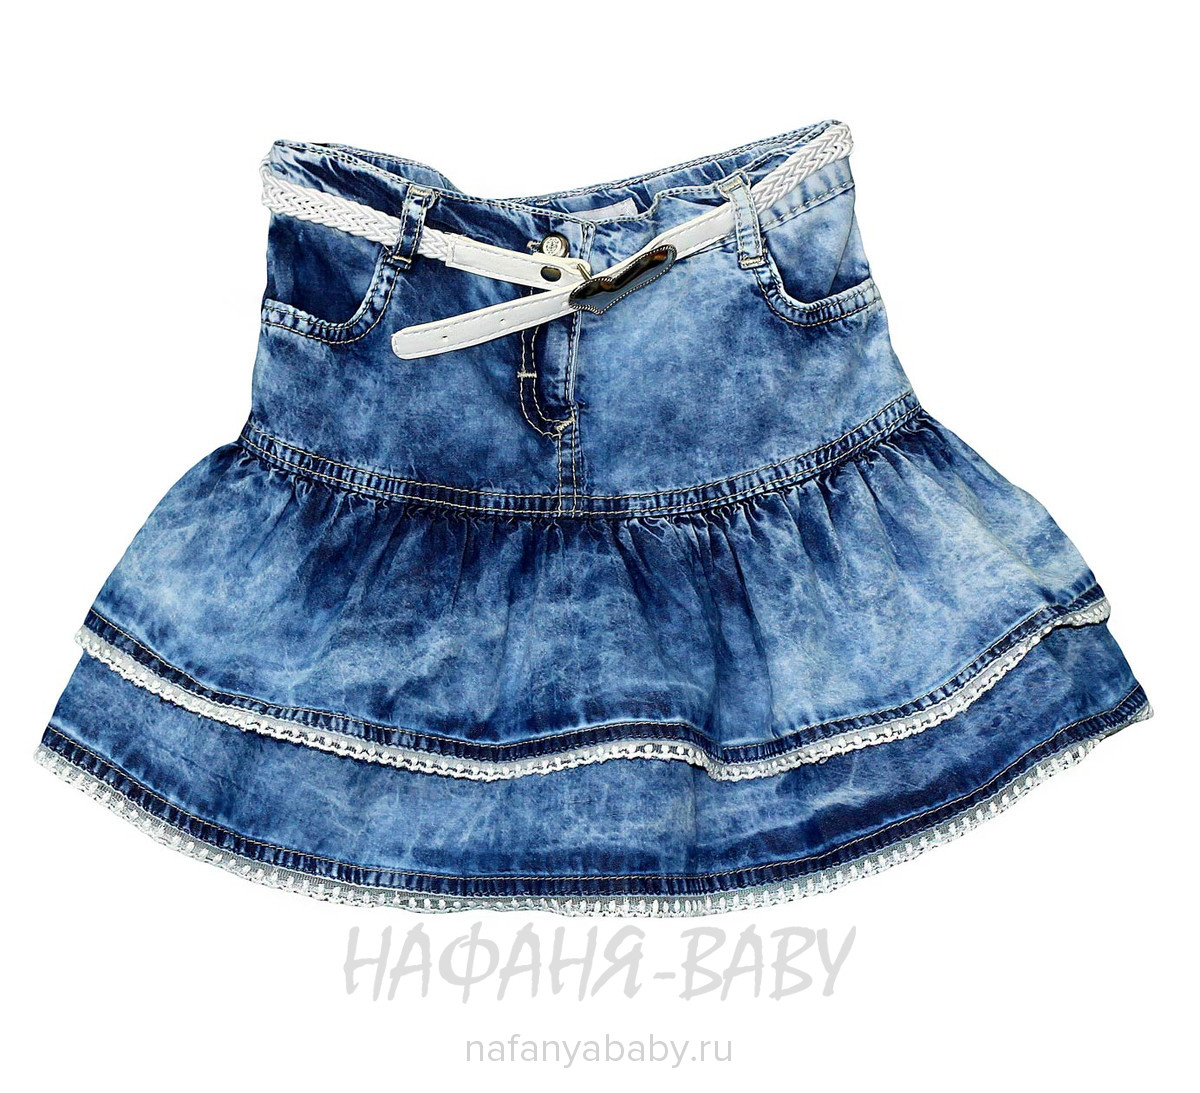 Детская джинсовая юбка SANI арт: 9134, 5-9 лет, 1-4 года, цвет синий, оптом Турция